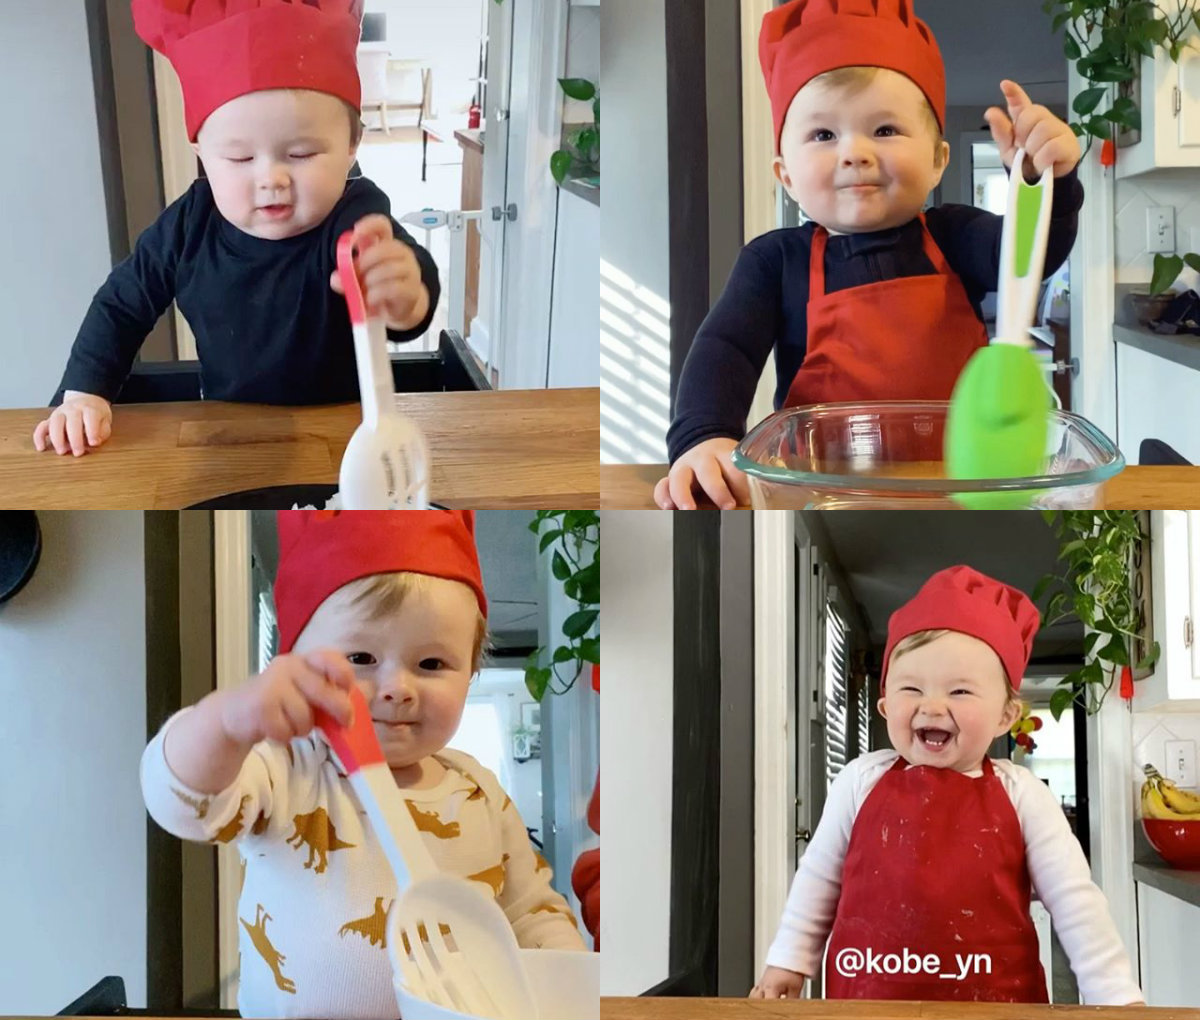 Σεφ ηλικίας ενός έτους έχει τρελάνει το Instagram με τις μαγειρικές του δεξιότητες!